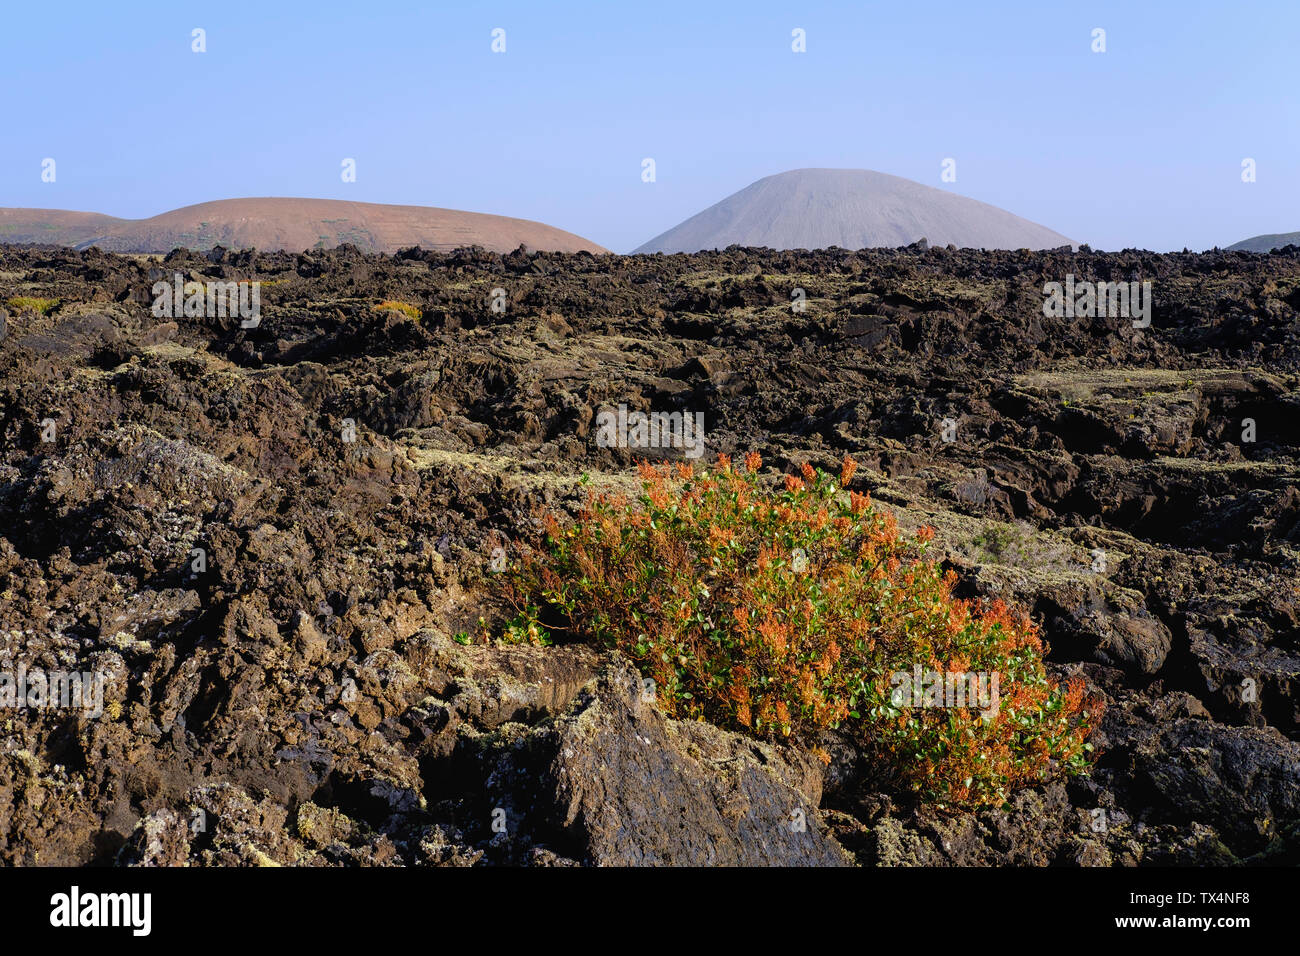 Spain, Canary Islands, Lanzarote, Los Volcanes Nature Park, Lava field, Canary Islands sorrel Stock Photo